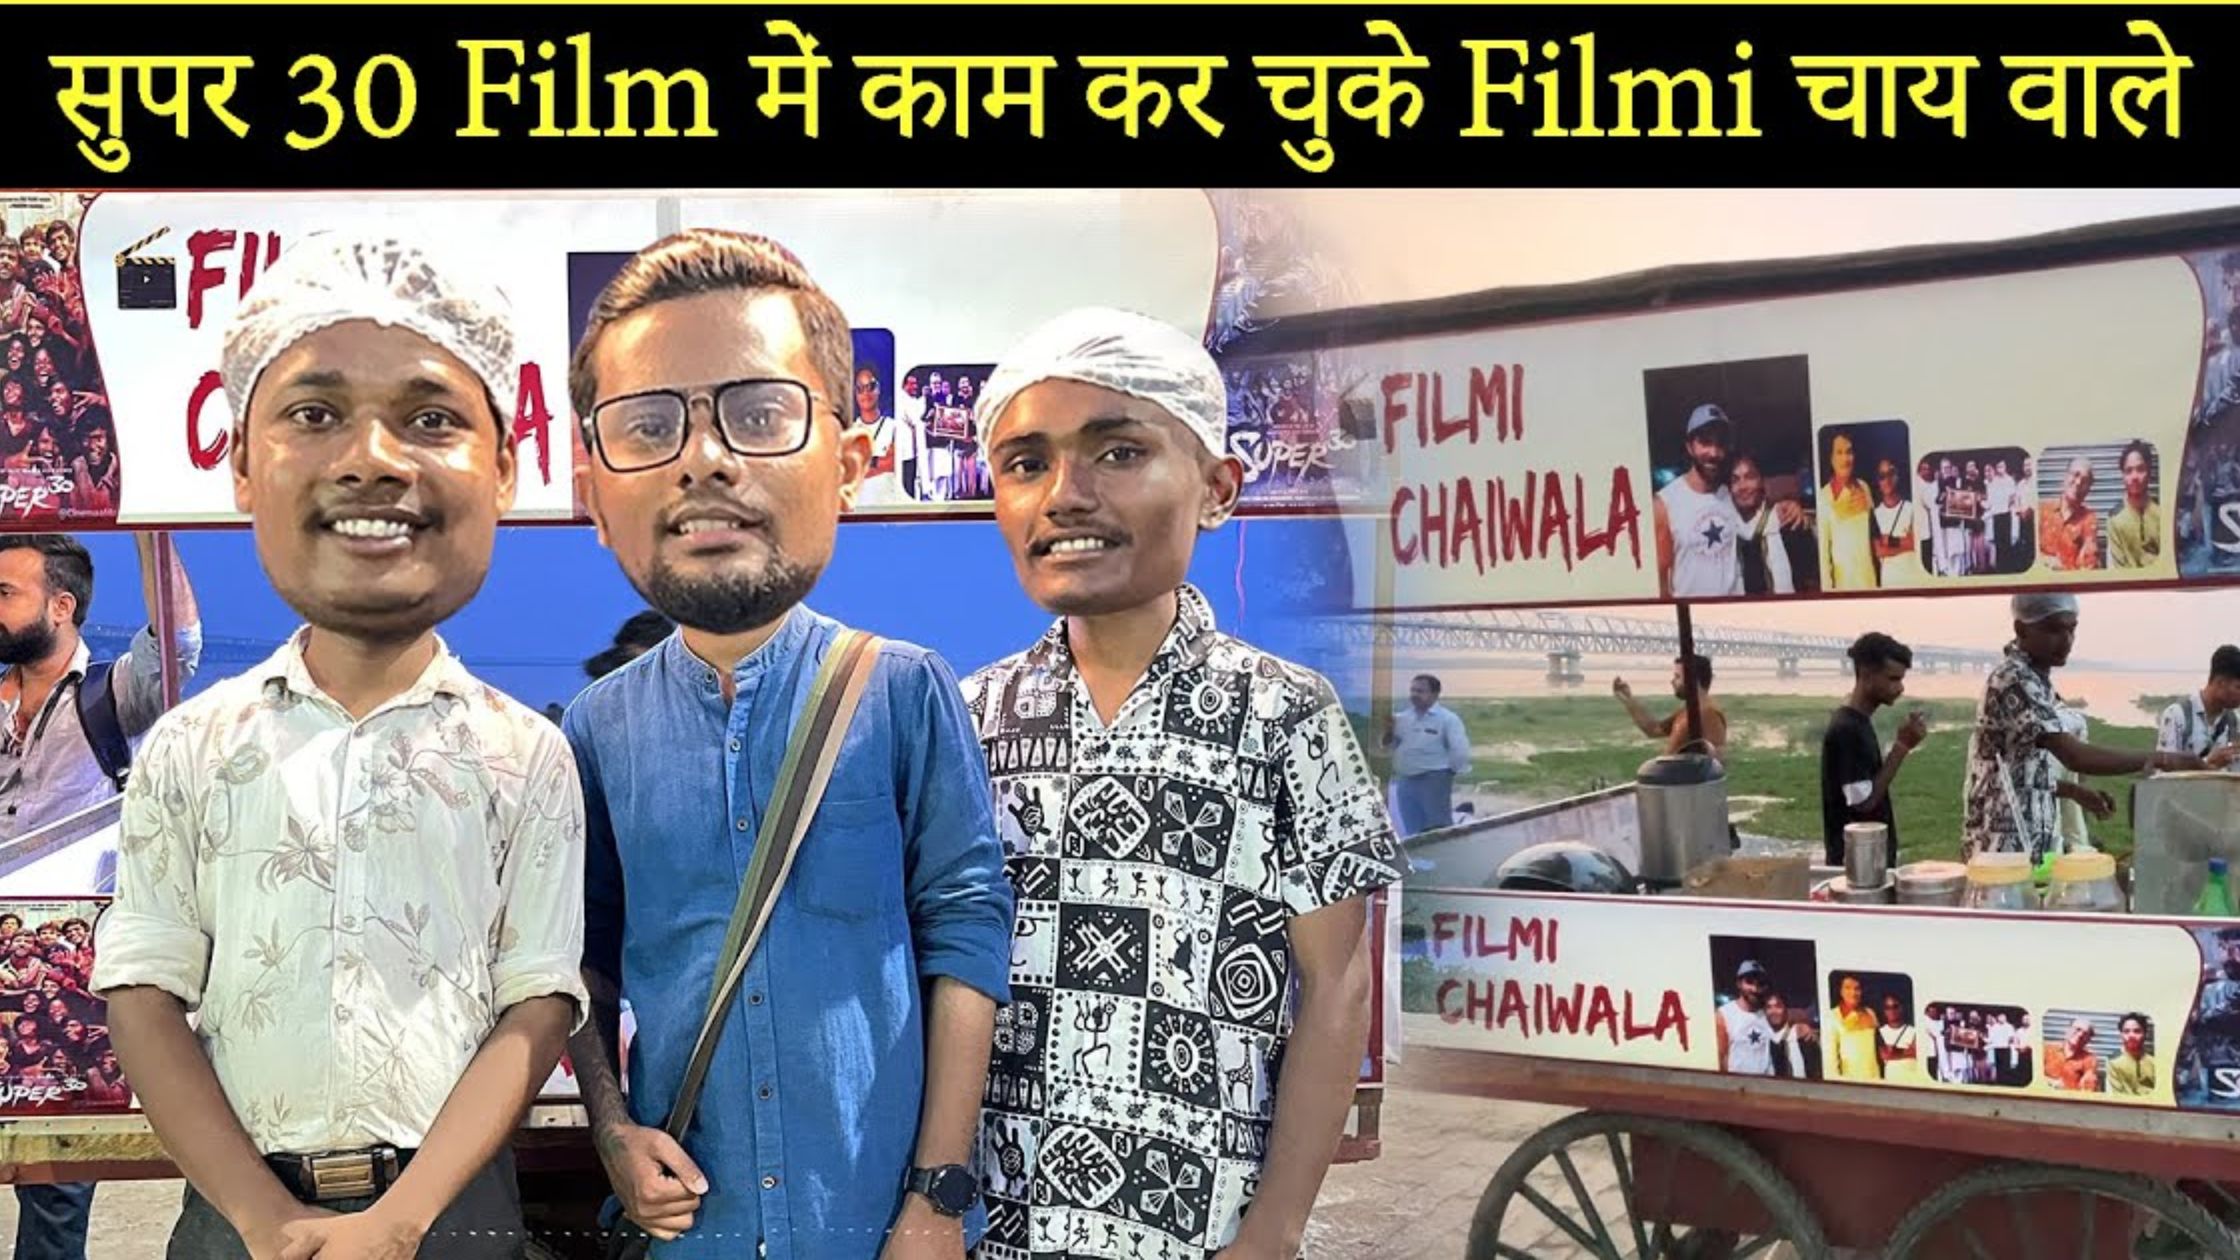 Filmi Chaiwala Patna